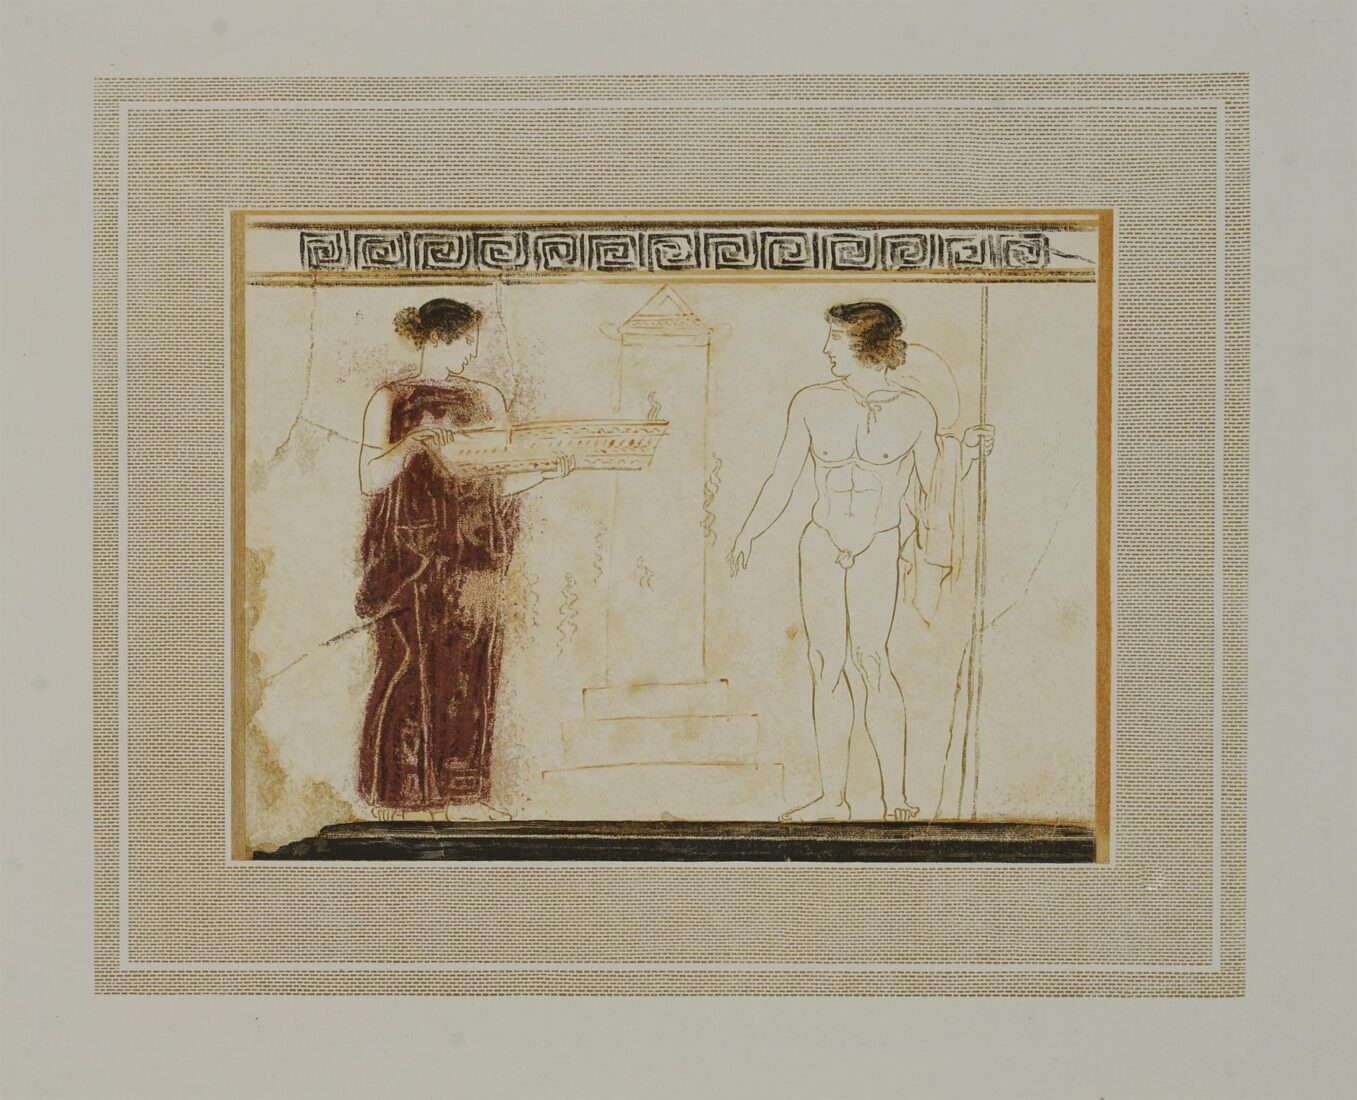 Λευκή λήκυθος του Μουσείου Αθηνών - Κεφαλληνός Γιάννης